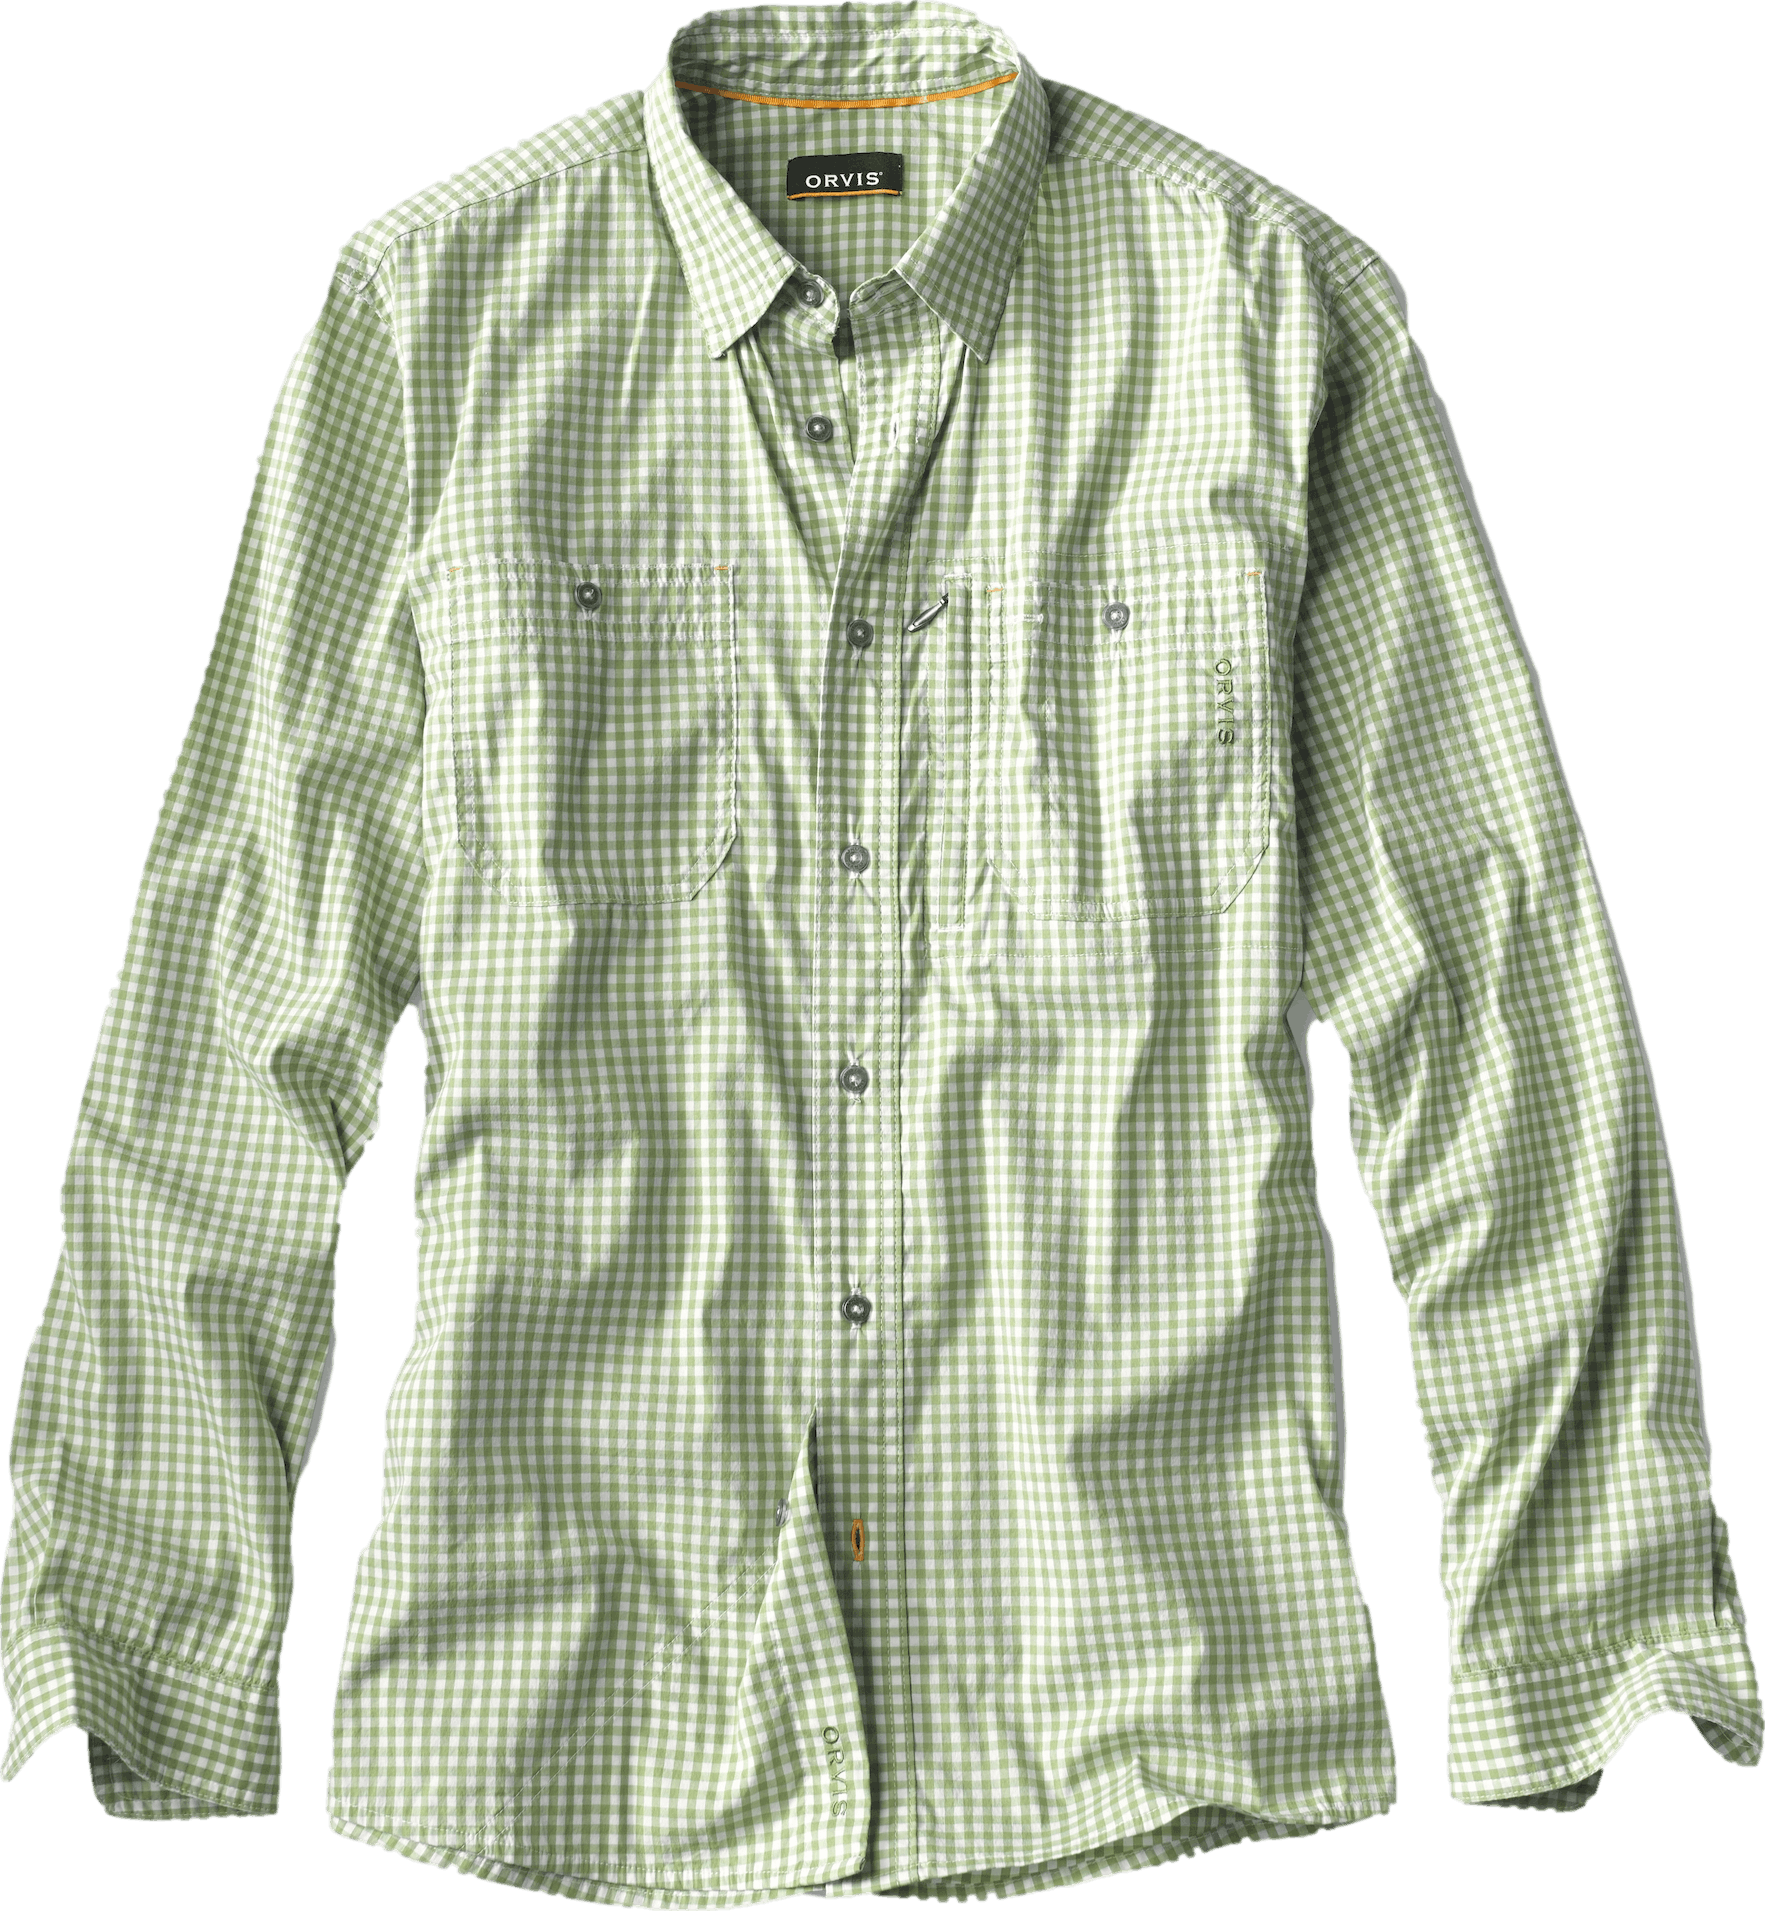 Orvis Men's River Guide Long Sleeve Shirt